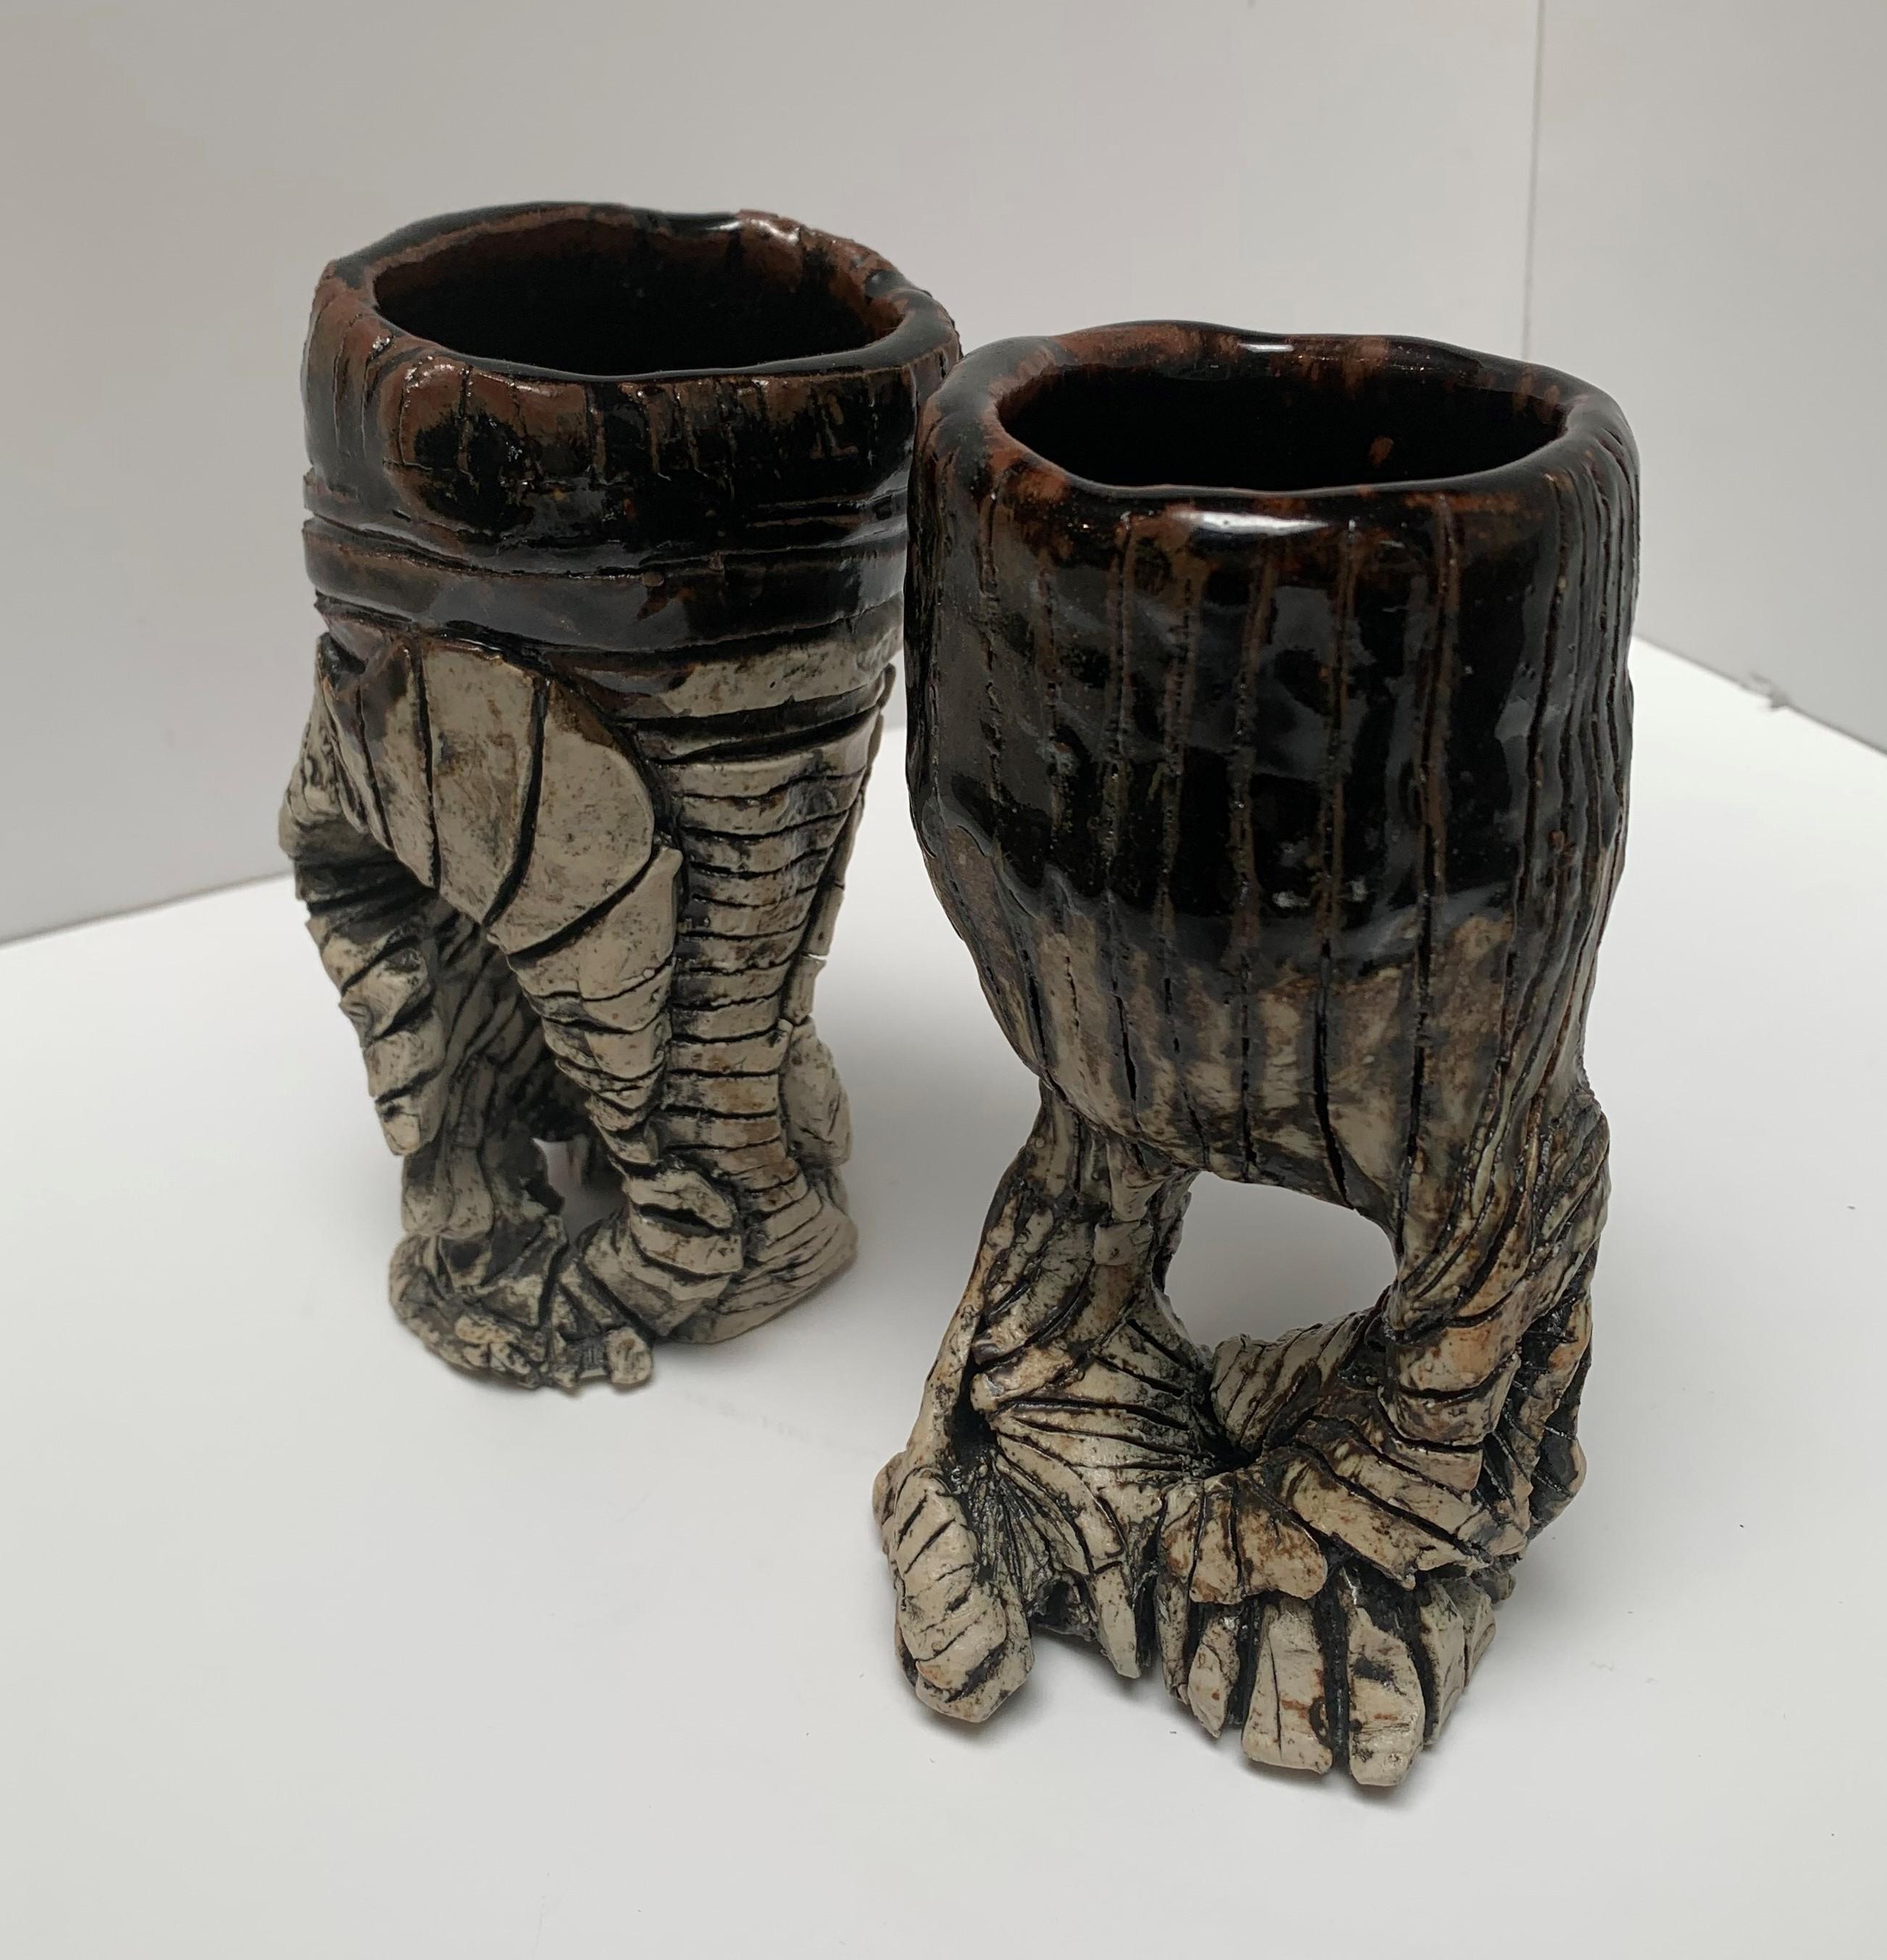 Unique earthenware goblets, figurative, glazed monochromatic.